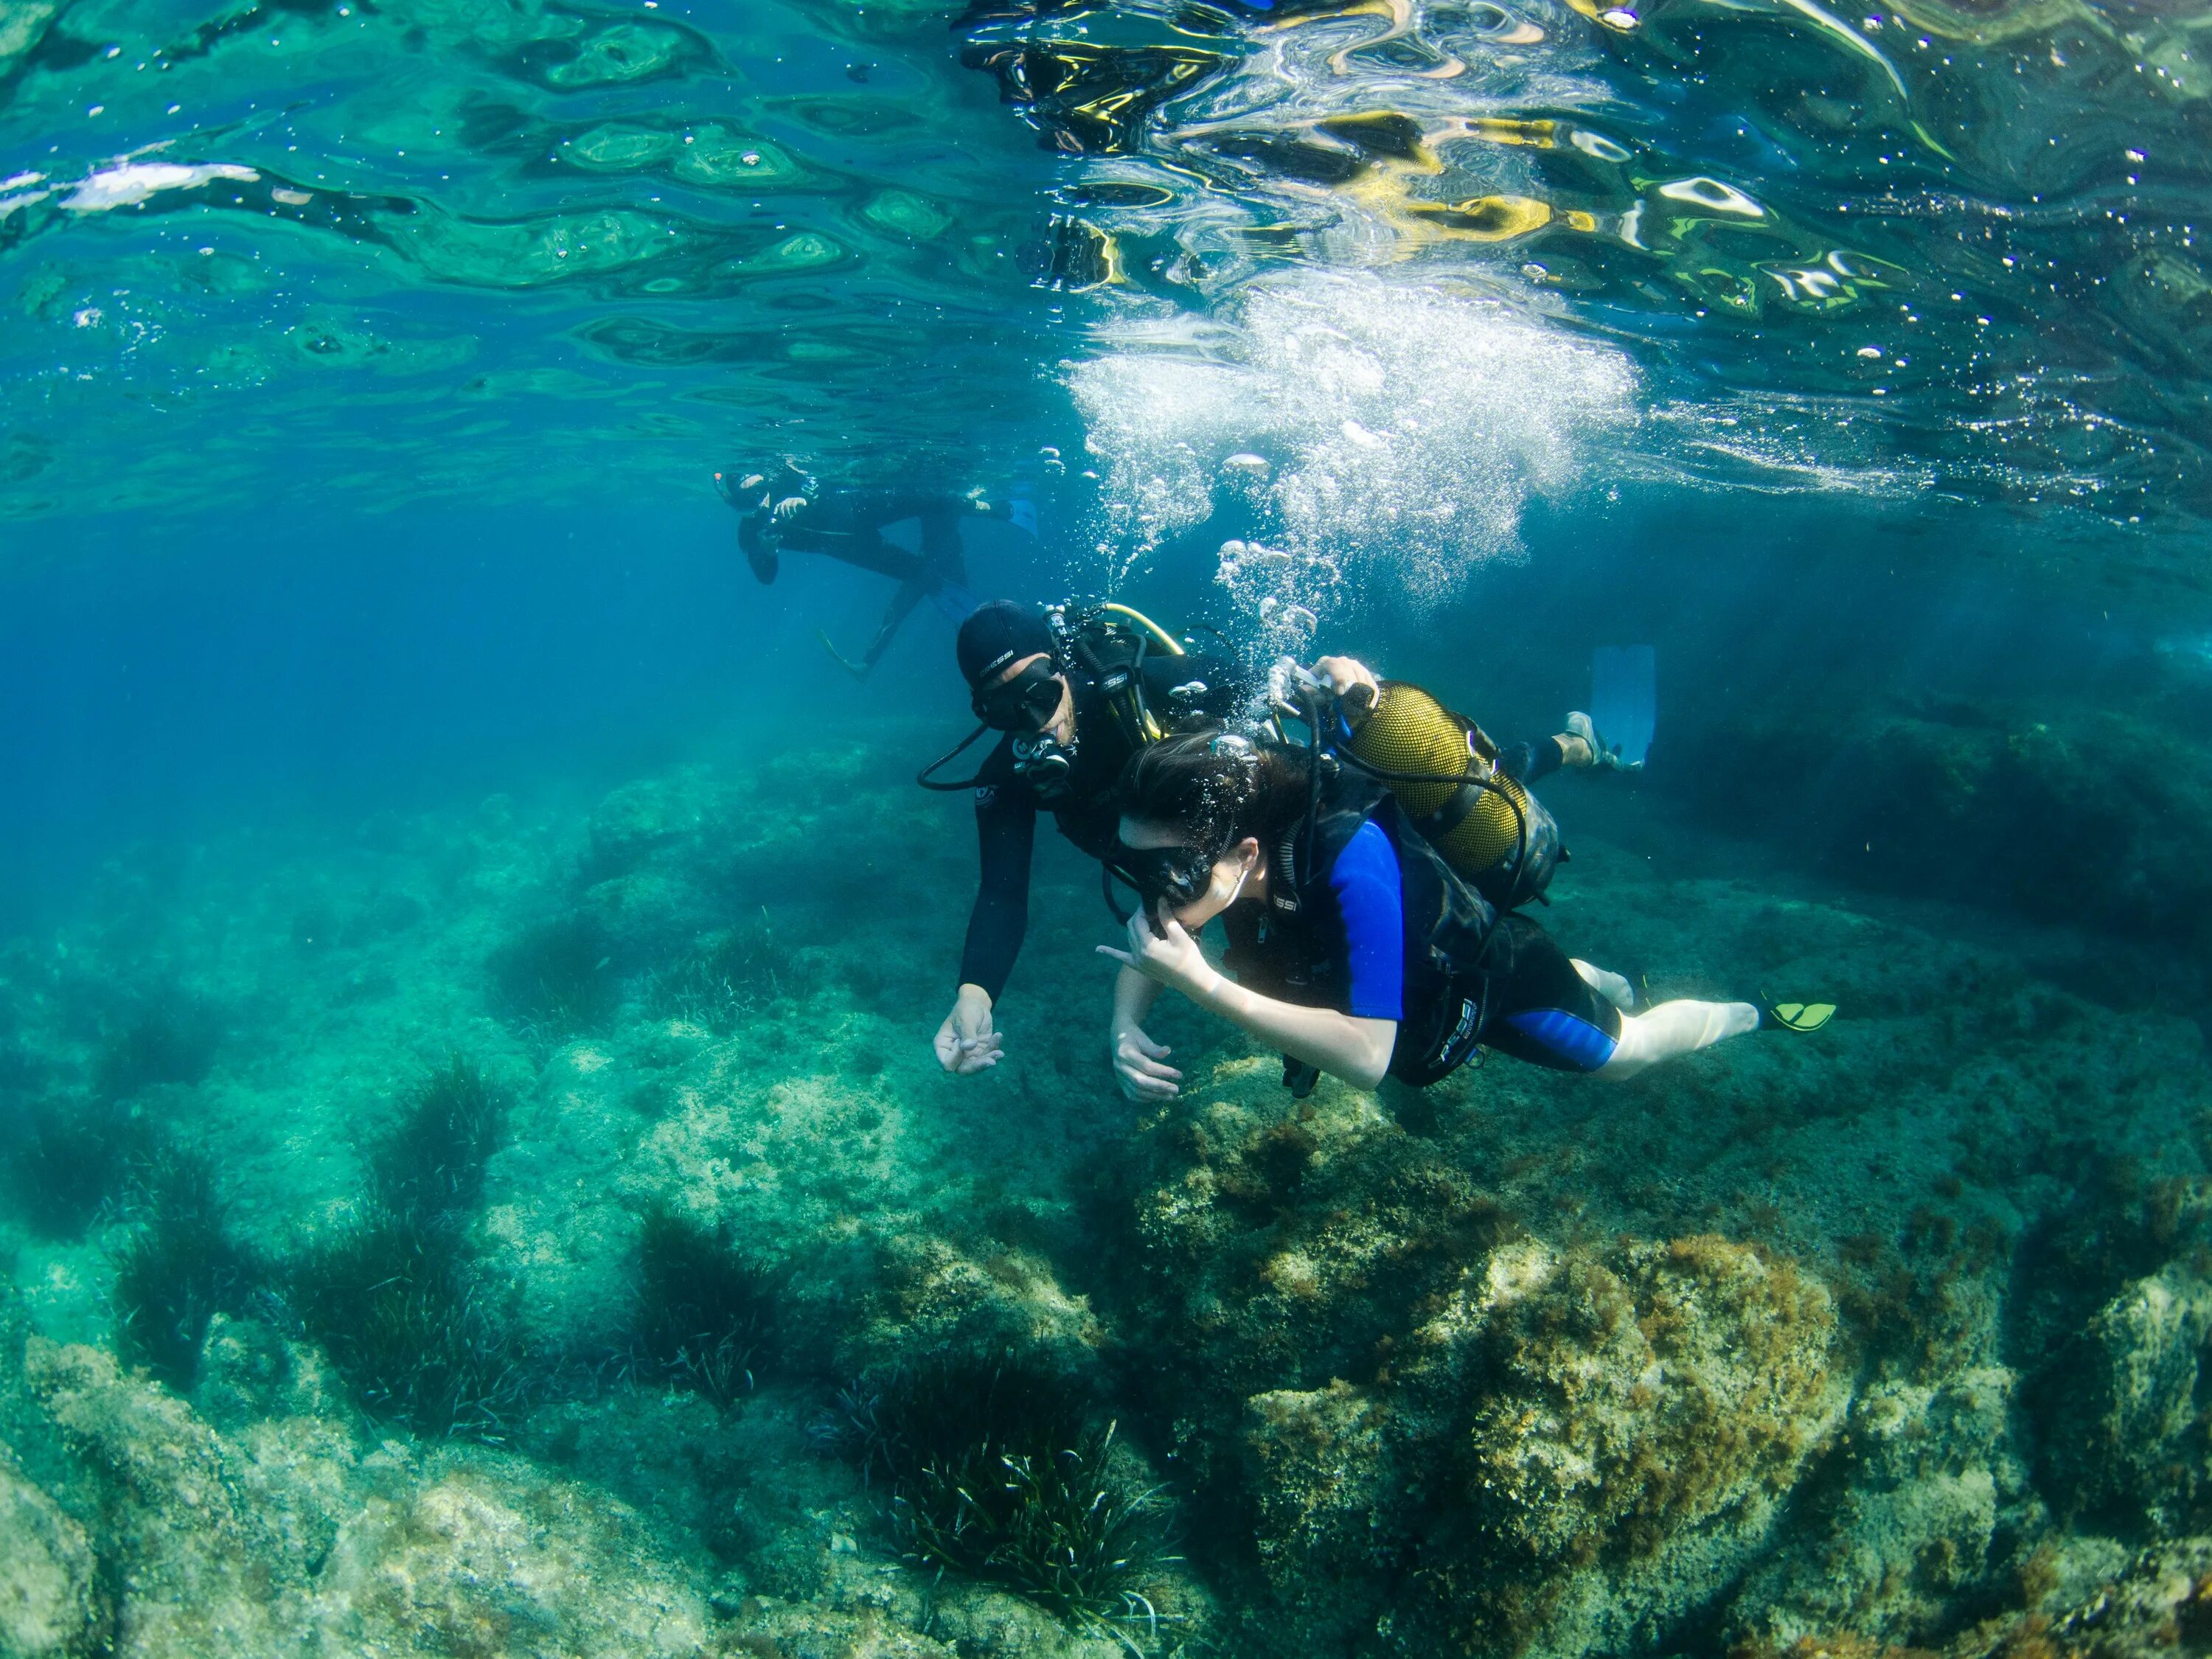 Reef tourism. Азорские острова дайвинг. Подводное плавание. Дайвинг в бассейне. Подводный мир Азорских островов.